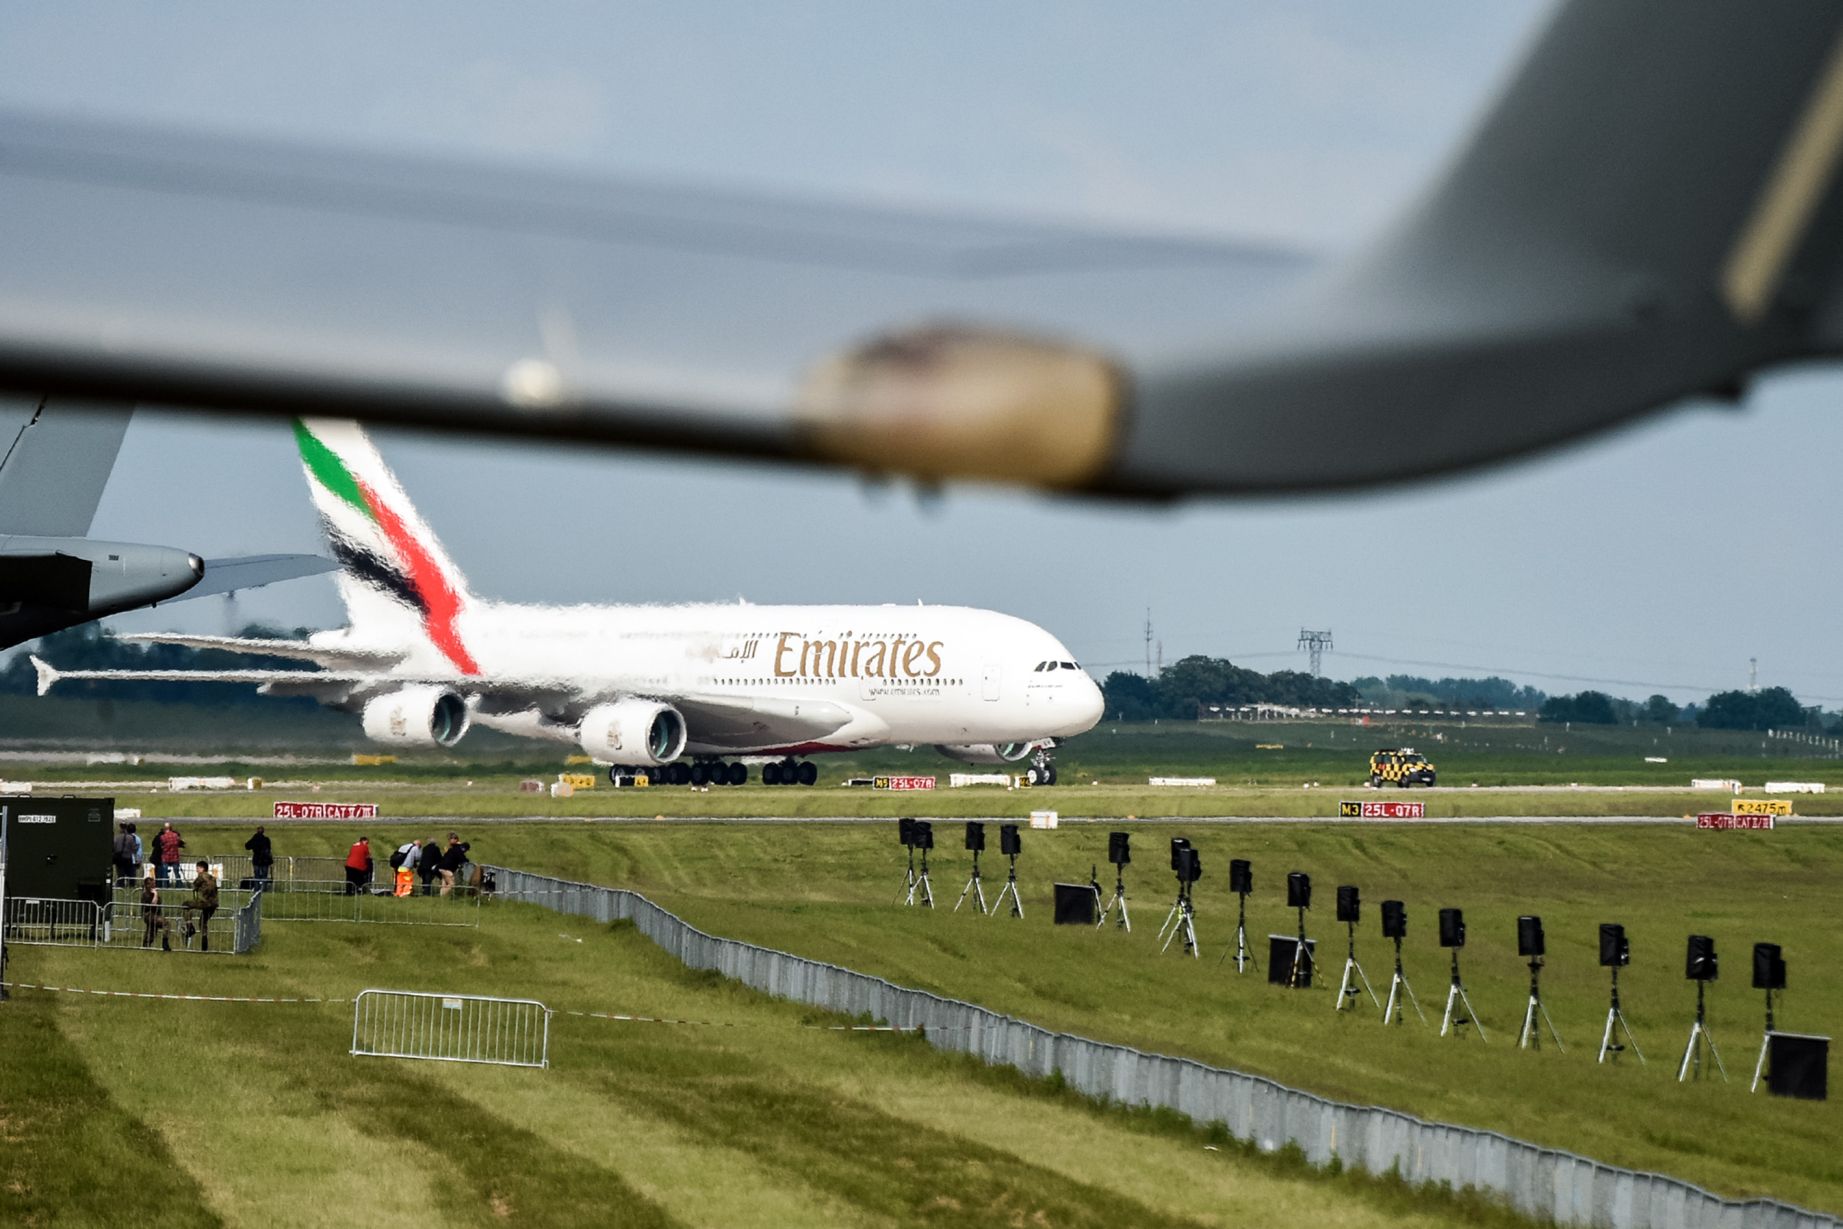 Javítani a 380-ason? A kiállítás egyik hatalmas darabja a legnagyobb 380-as üzemeltető, az Emirates friss gépe